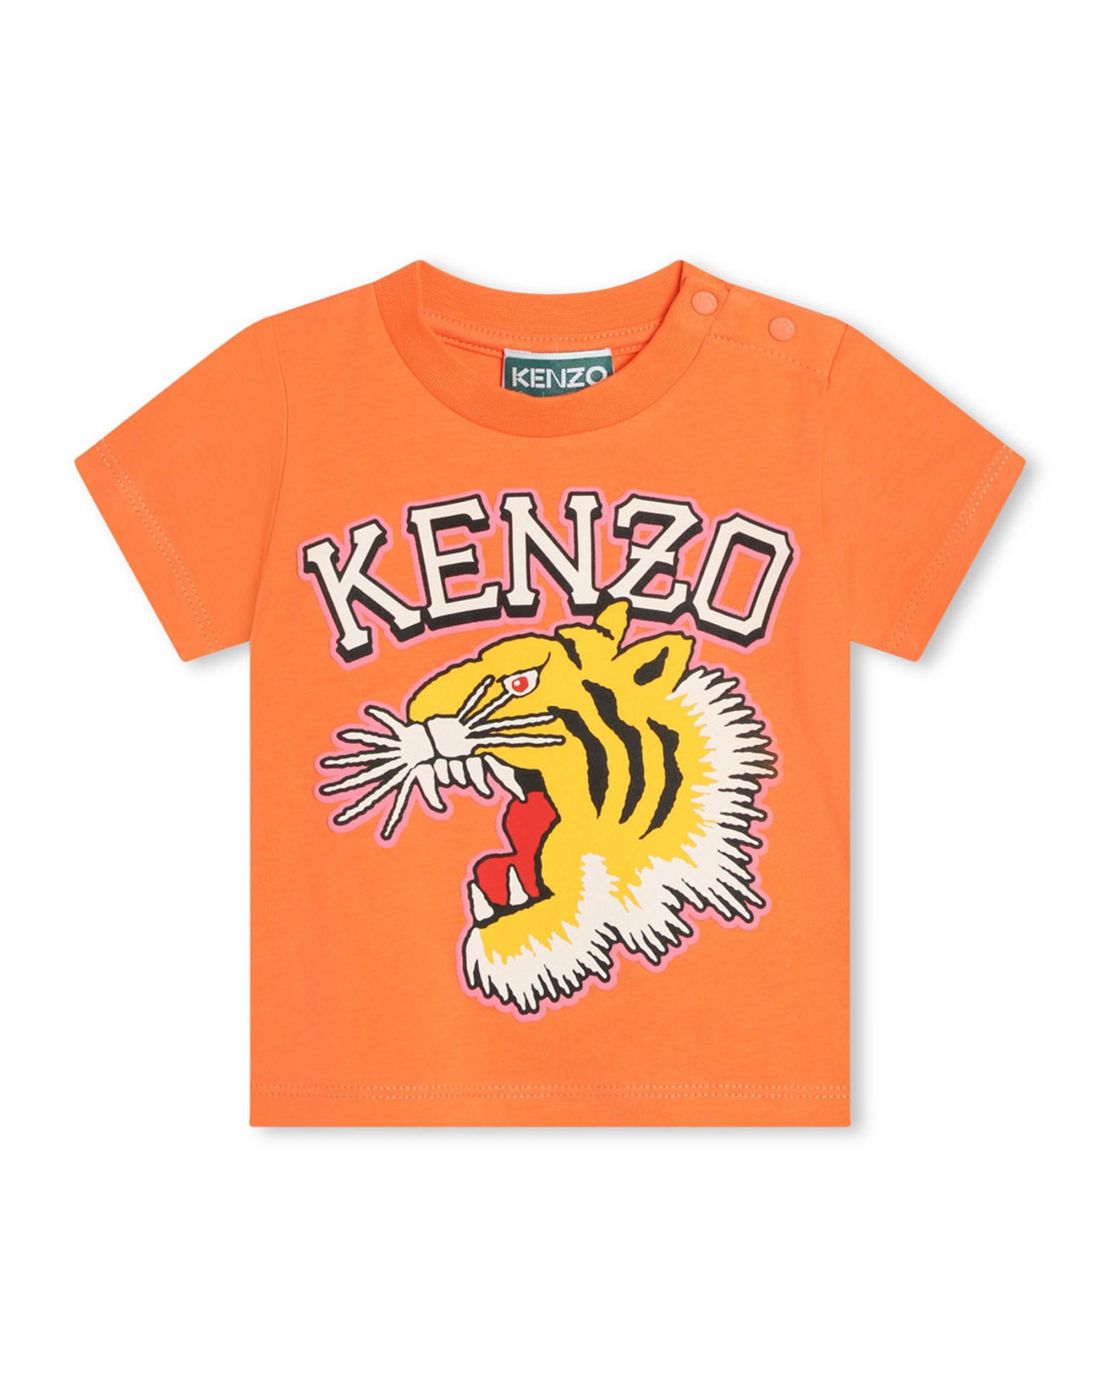 Kenzo Boys T-shirt